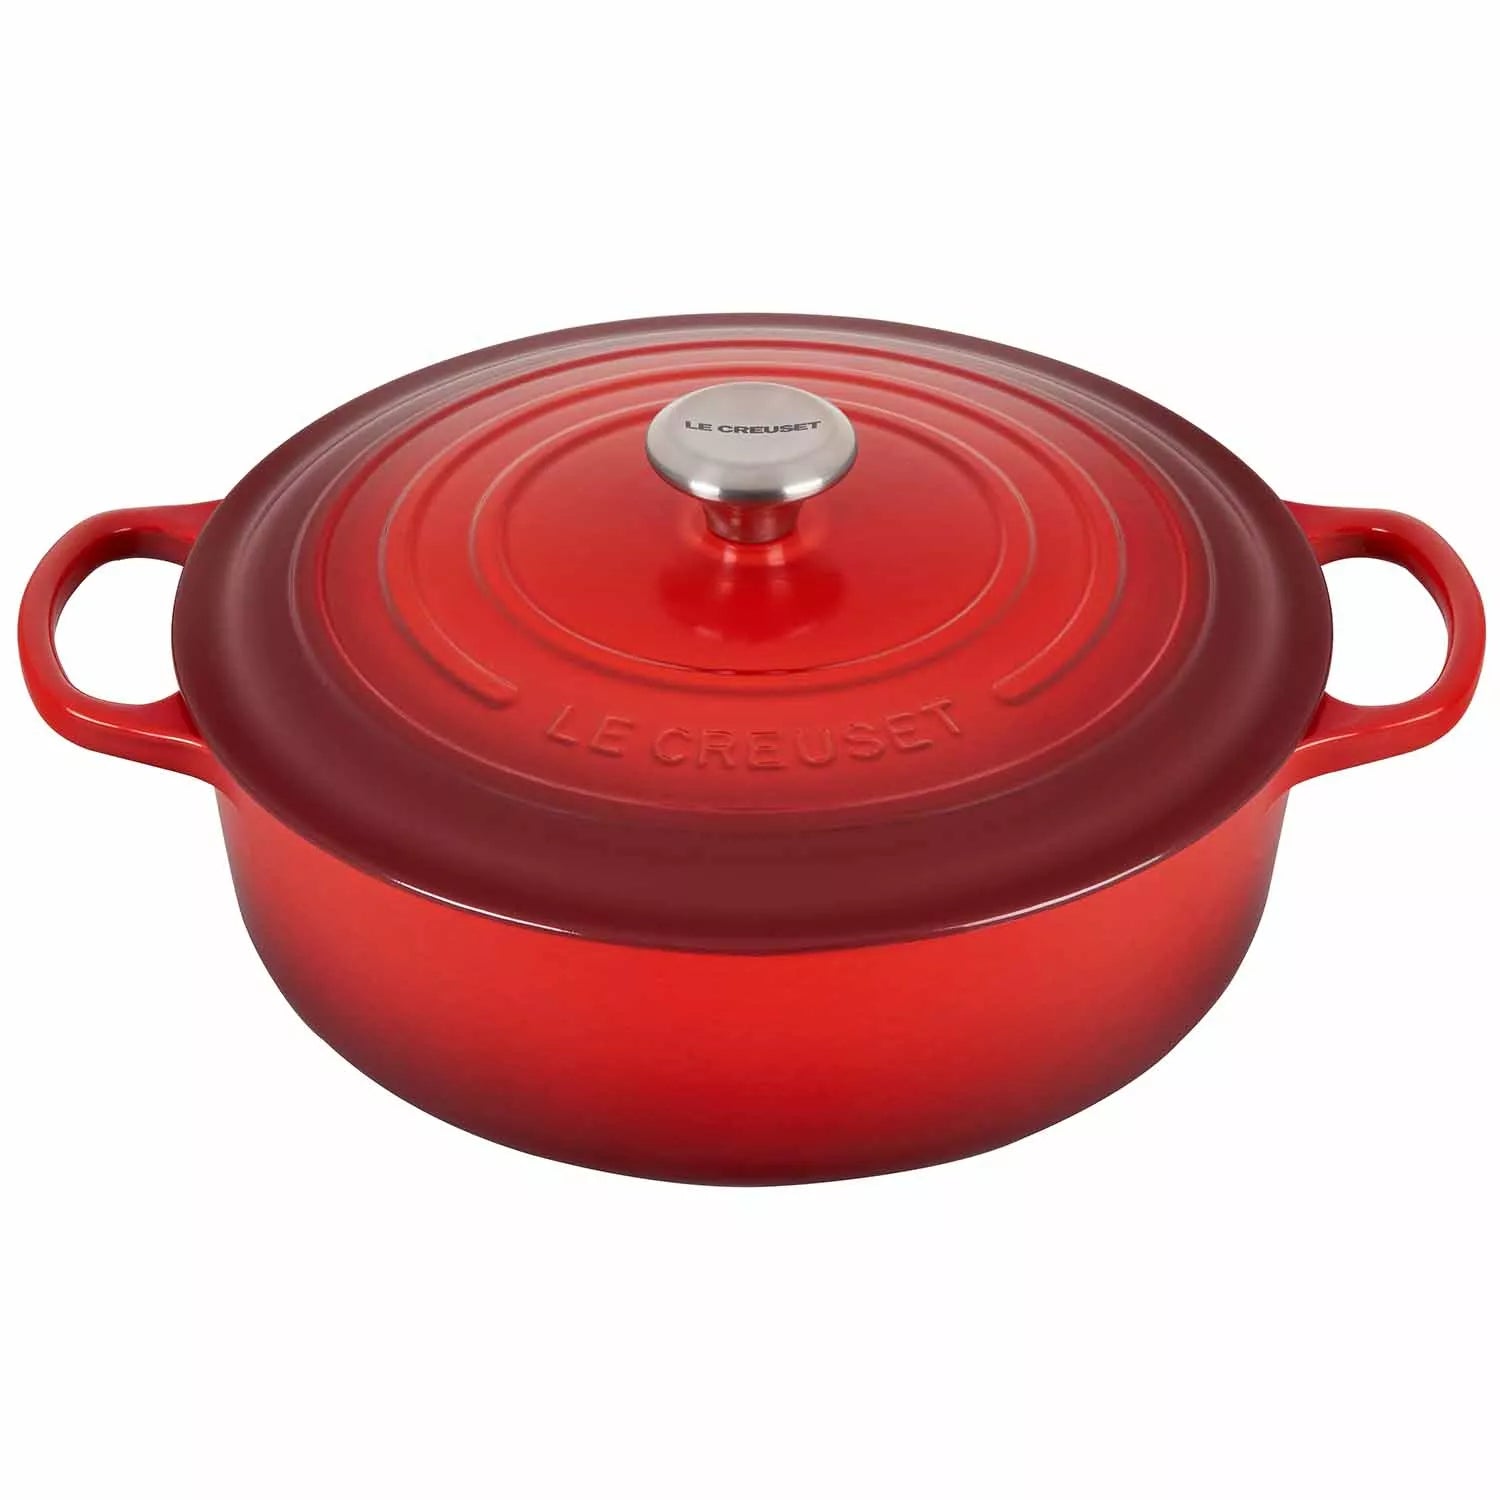 Le Creuset Wide Round Oven – SPECIAL – 6.5 QT – Cerise